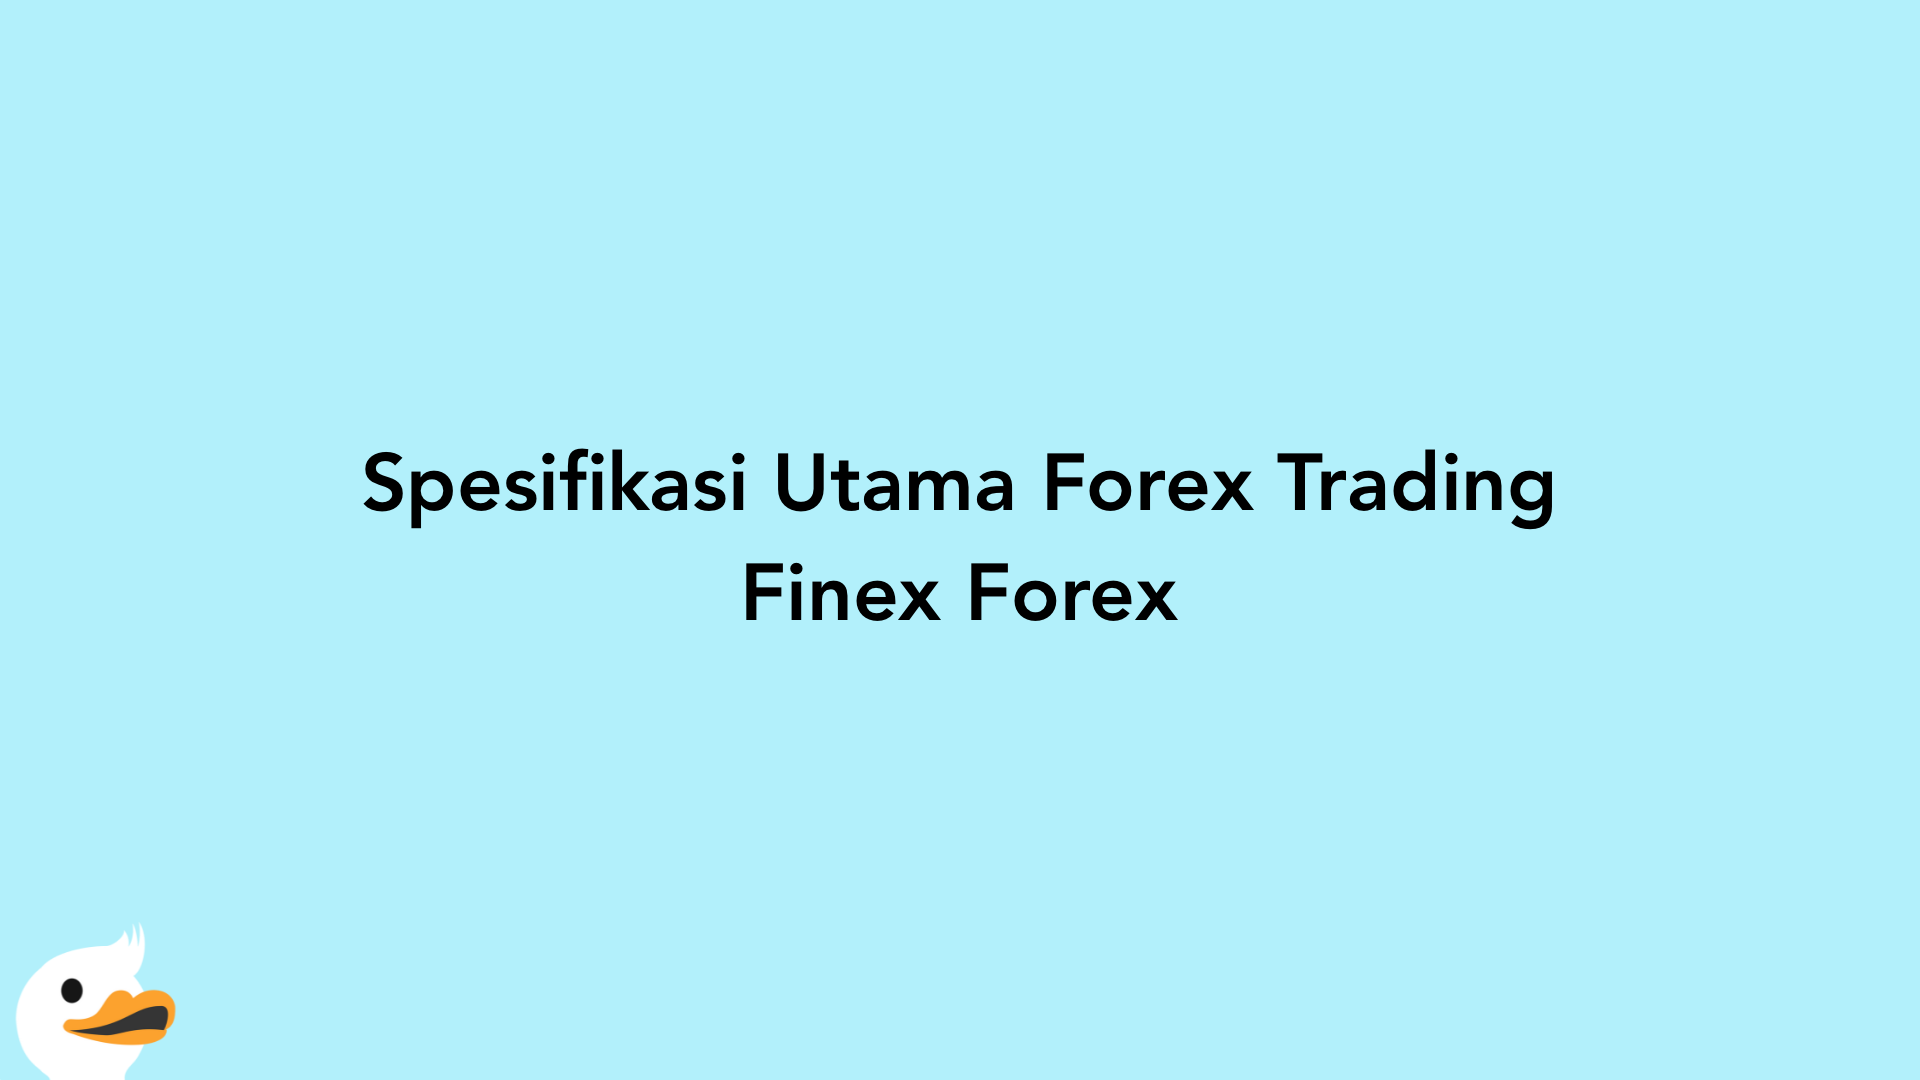 Spesifikasi Utama Forex Trading Finex Forex